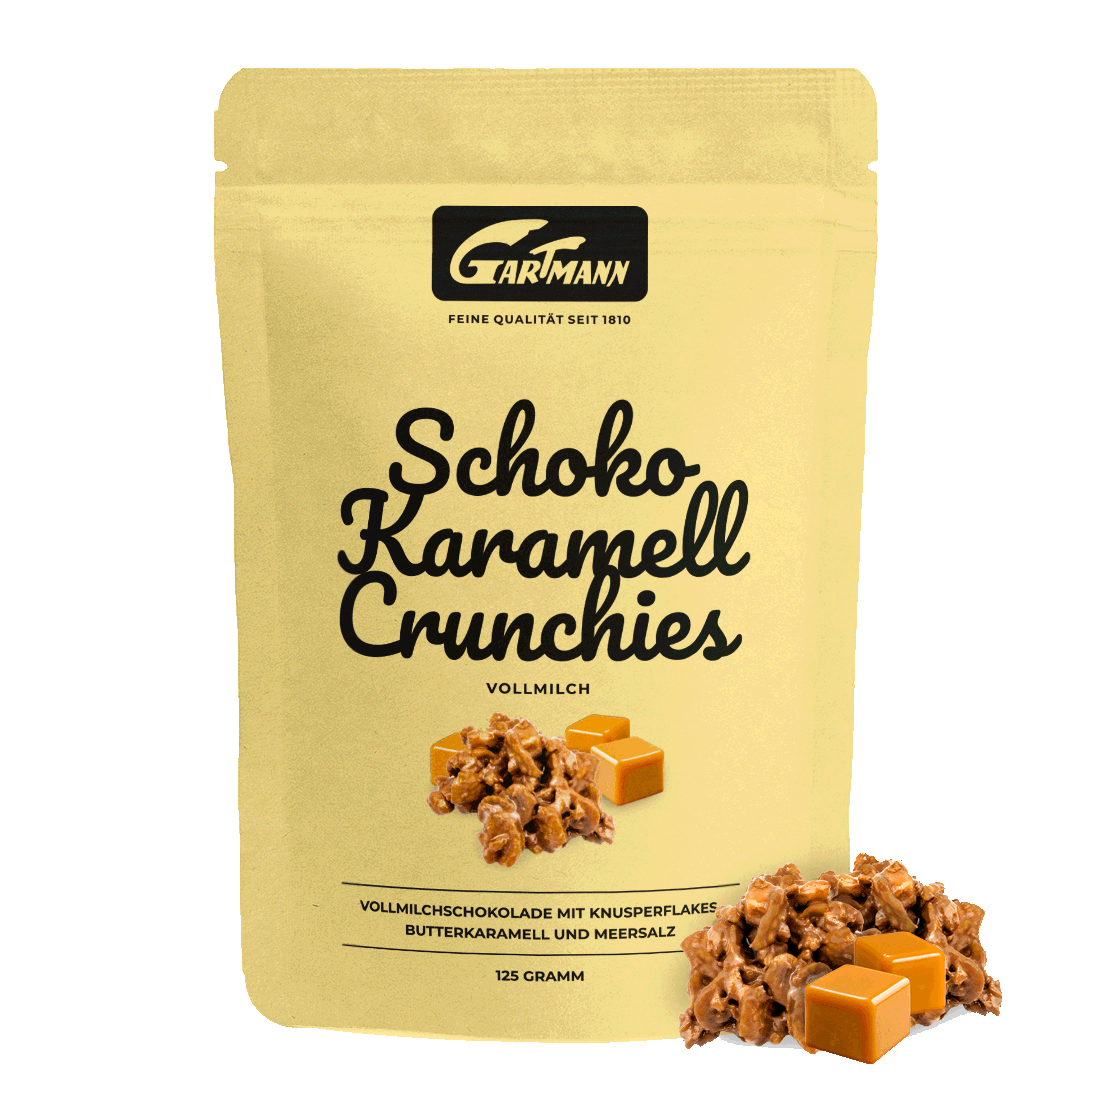 Gartmann Schoko Karamell Crunchies | Gartmann Schokolade